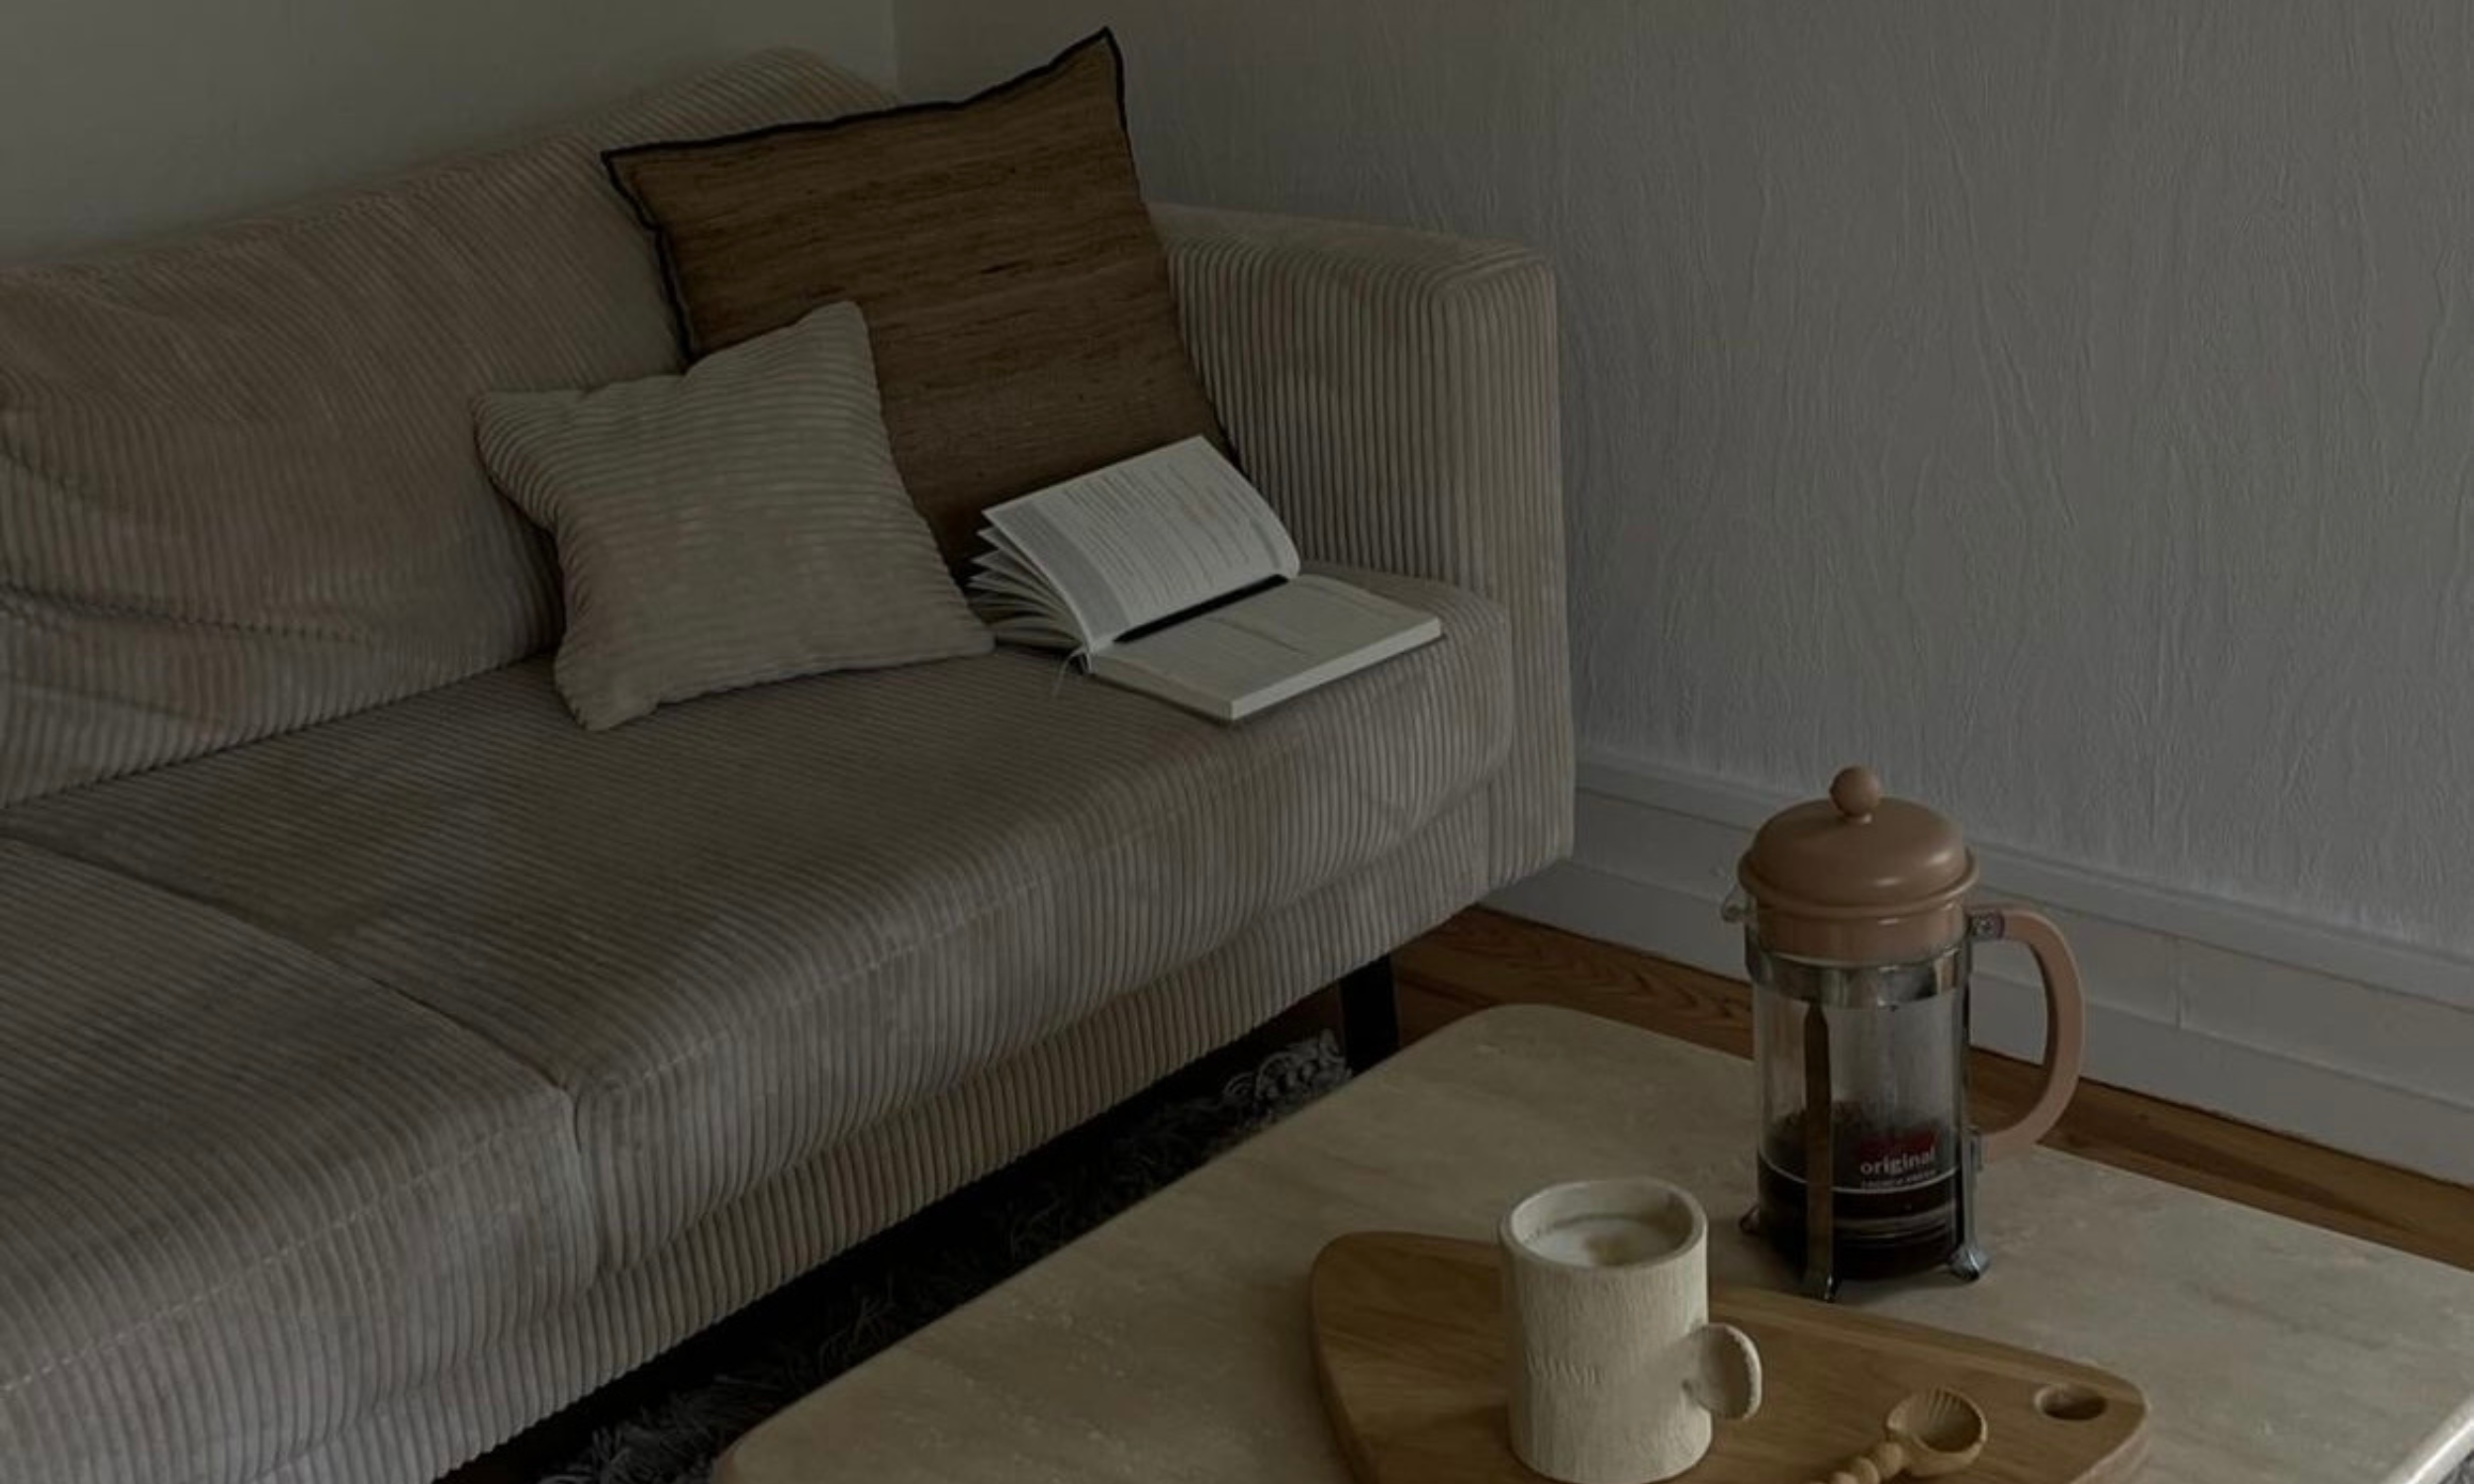 Carnet de journaling ouvert sur un canapé en velours beige dans une ambiance cosy et chaleureuse.